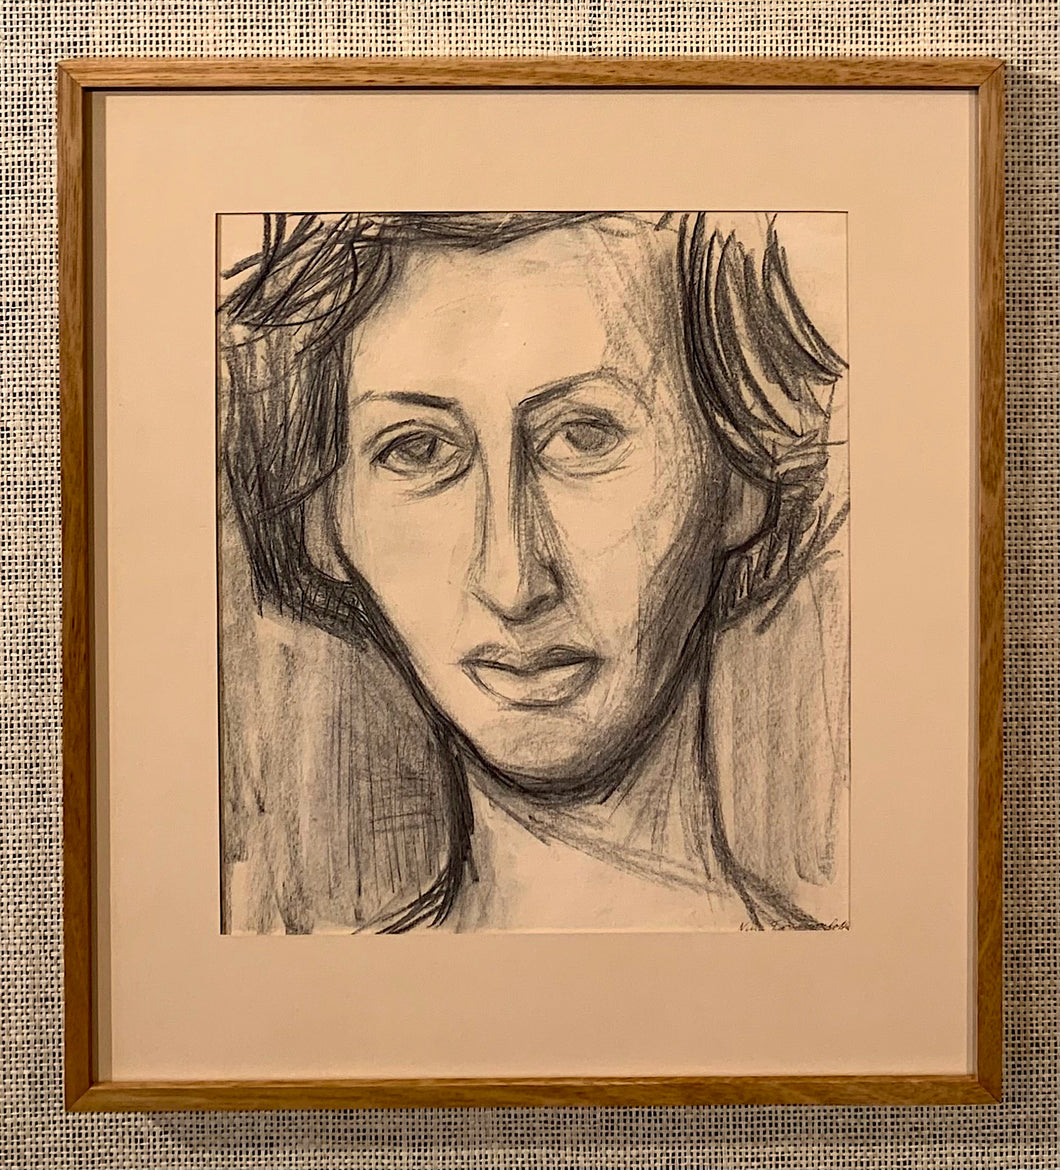 'Portrait' by Nína Tryggvadóttir